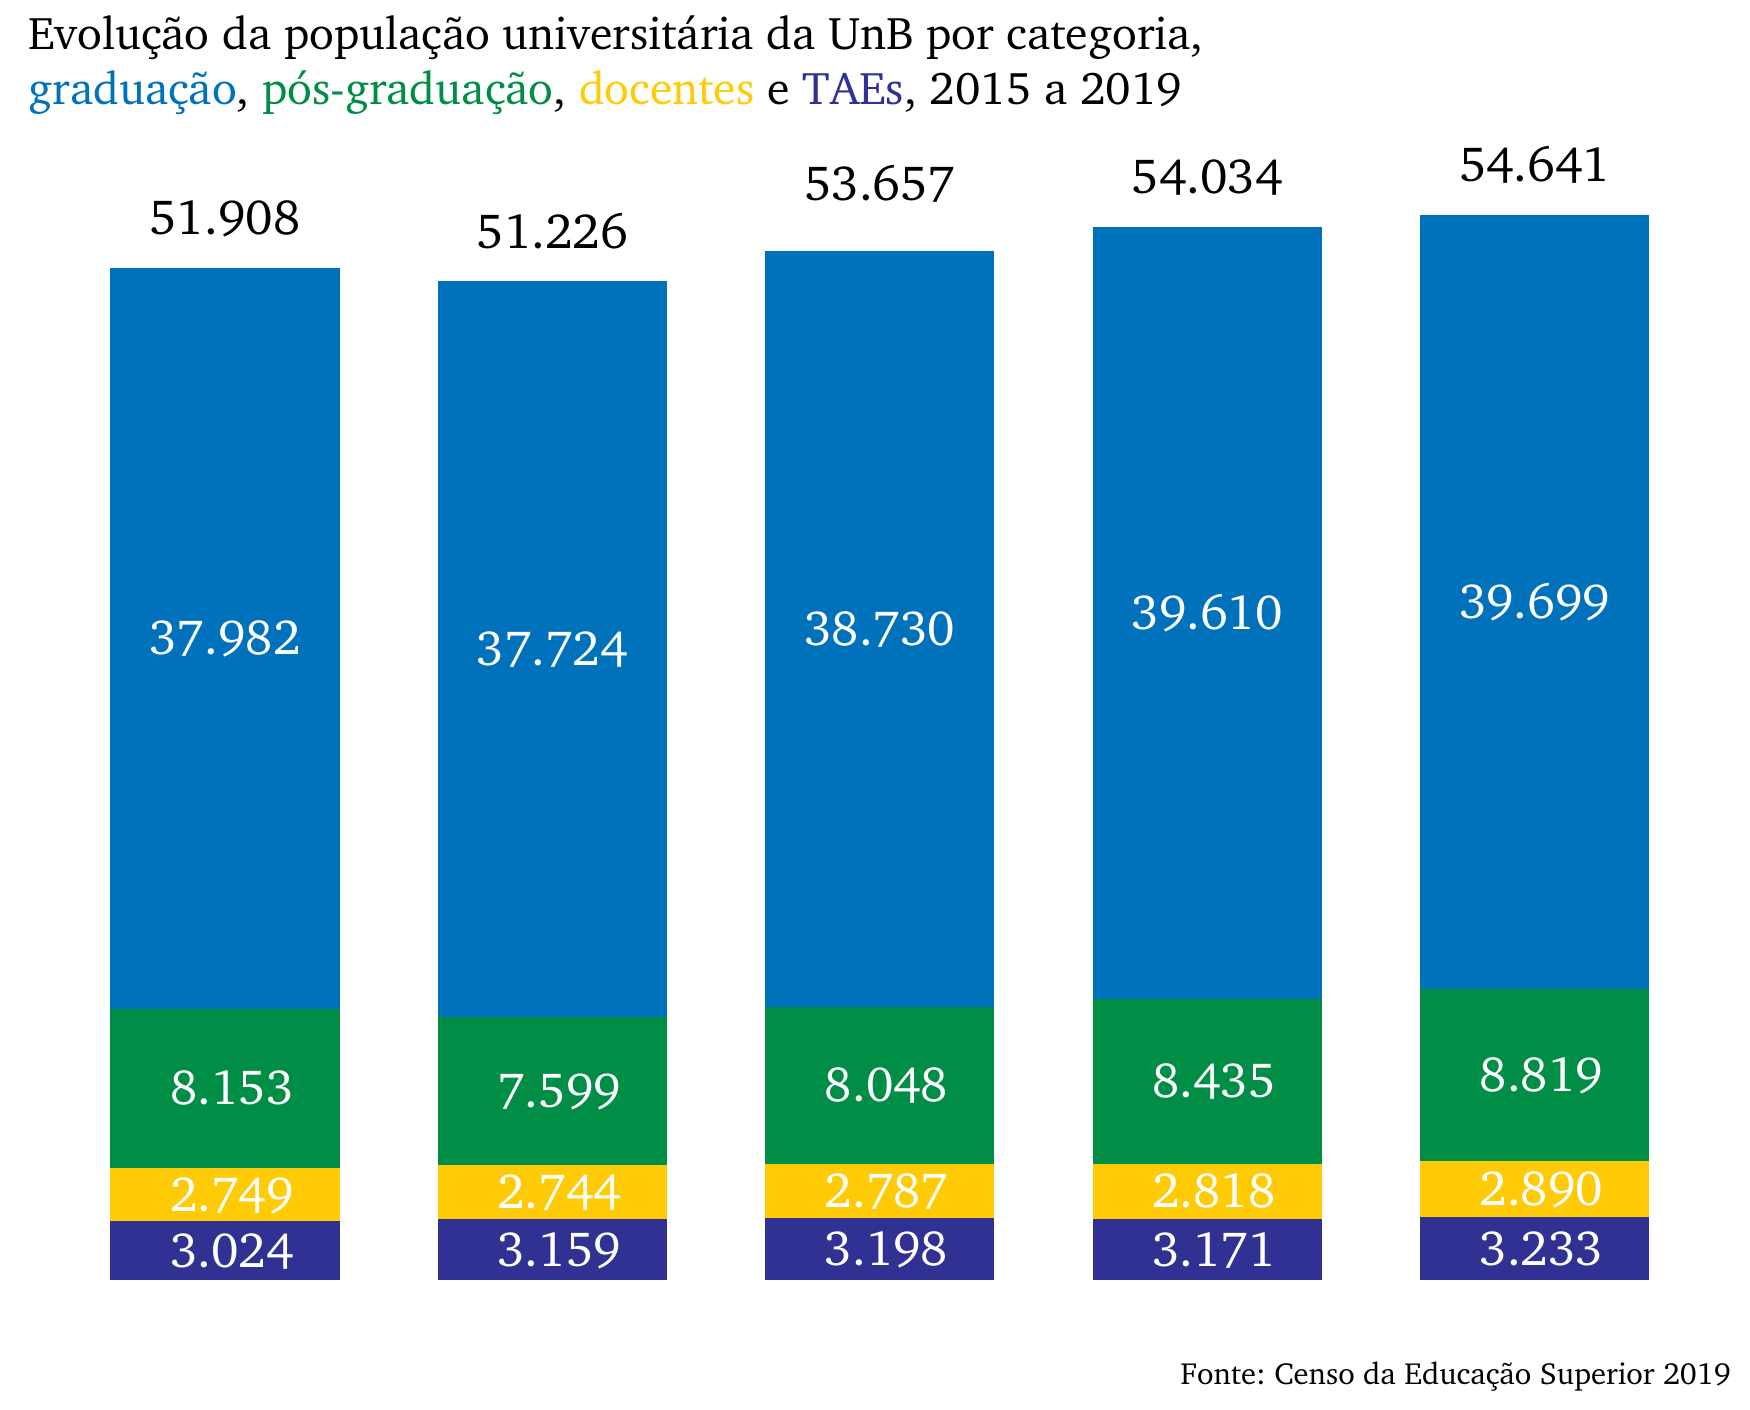 Evolução da população universitária da UnB, 2015 a 2019